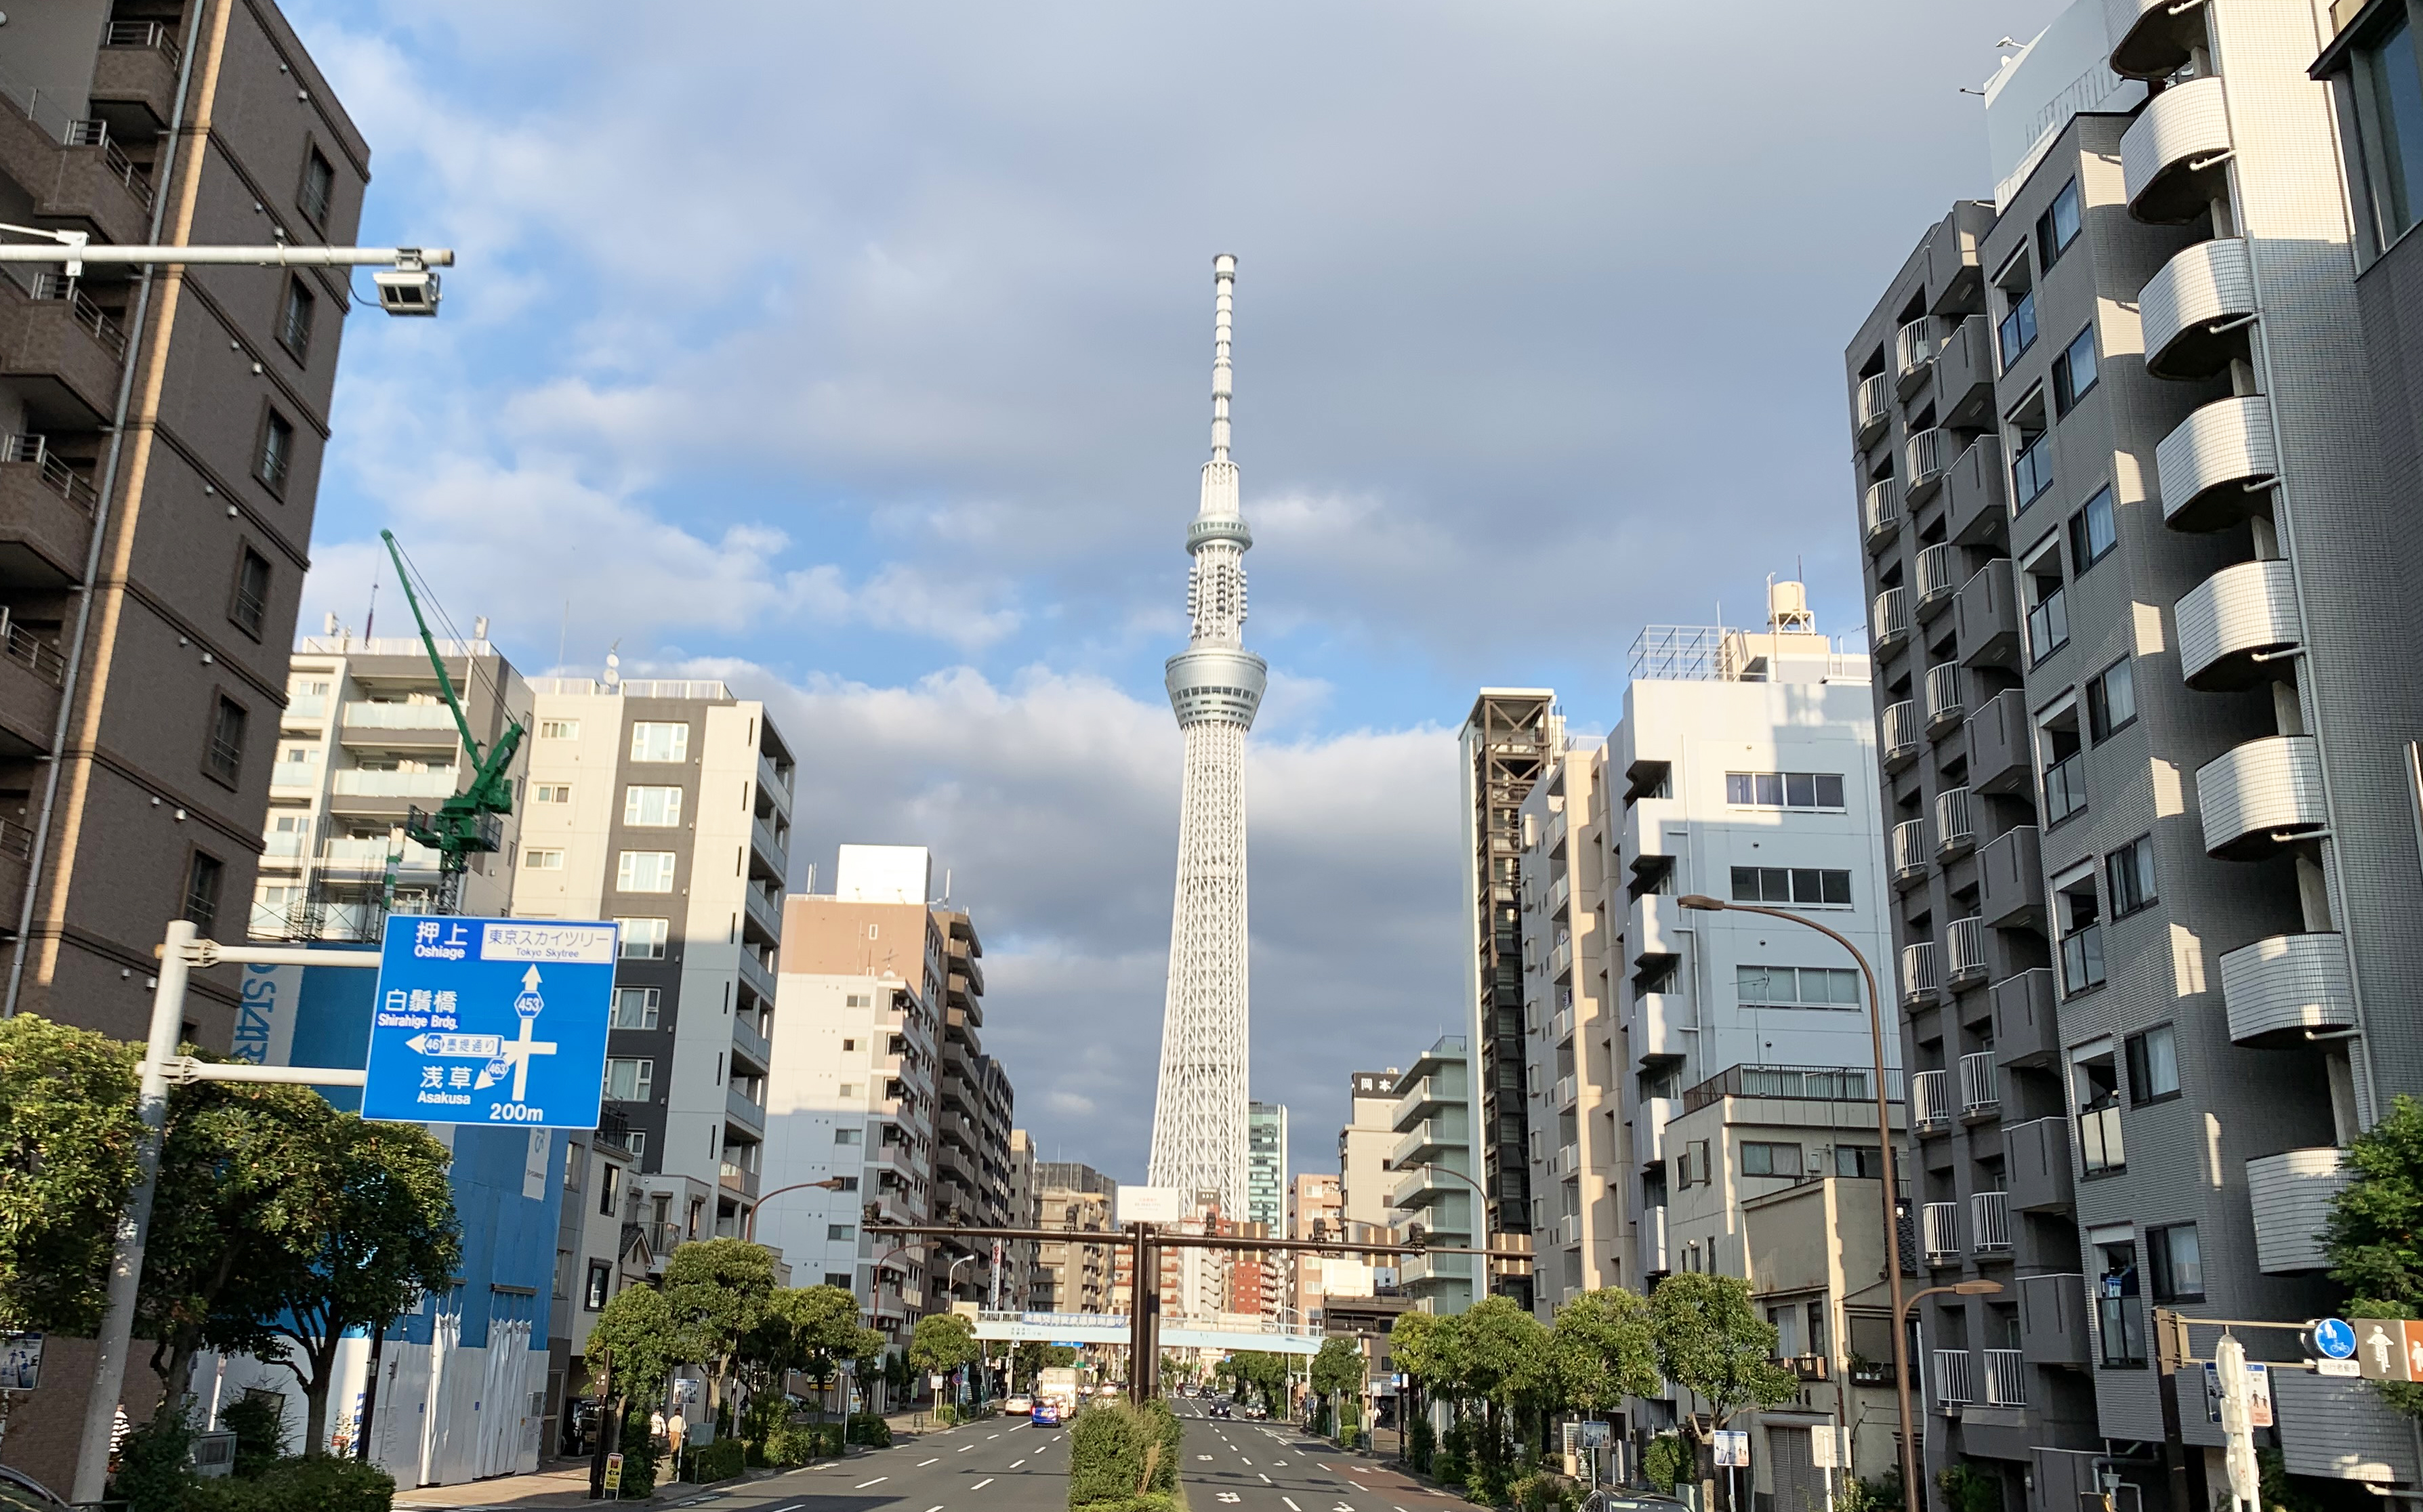 衝撃 初めて東京スカイツリーに登ってみたら 後悔 した話 ロケットニュース24